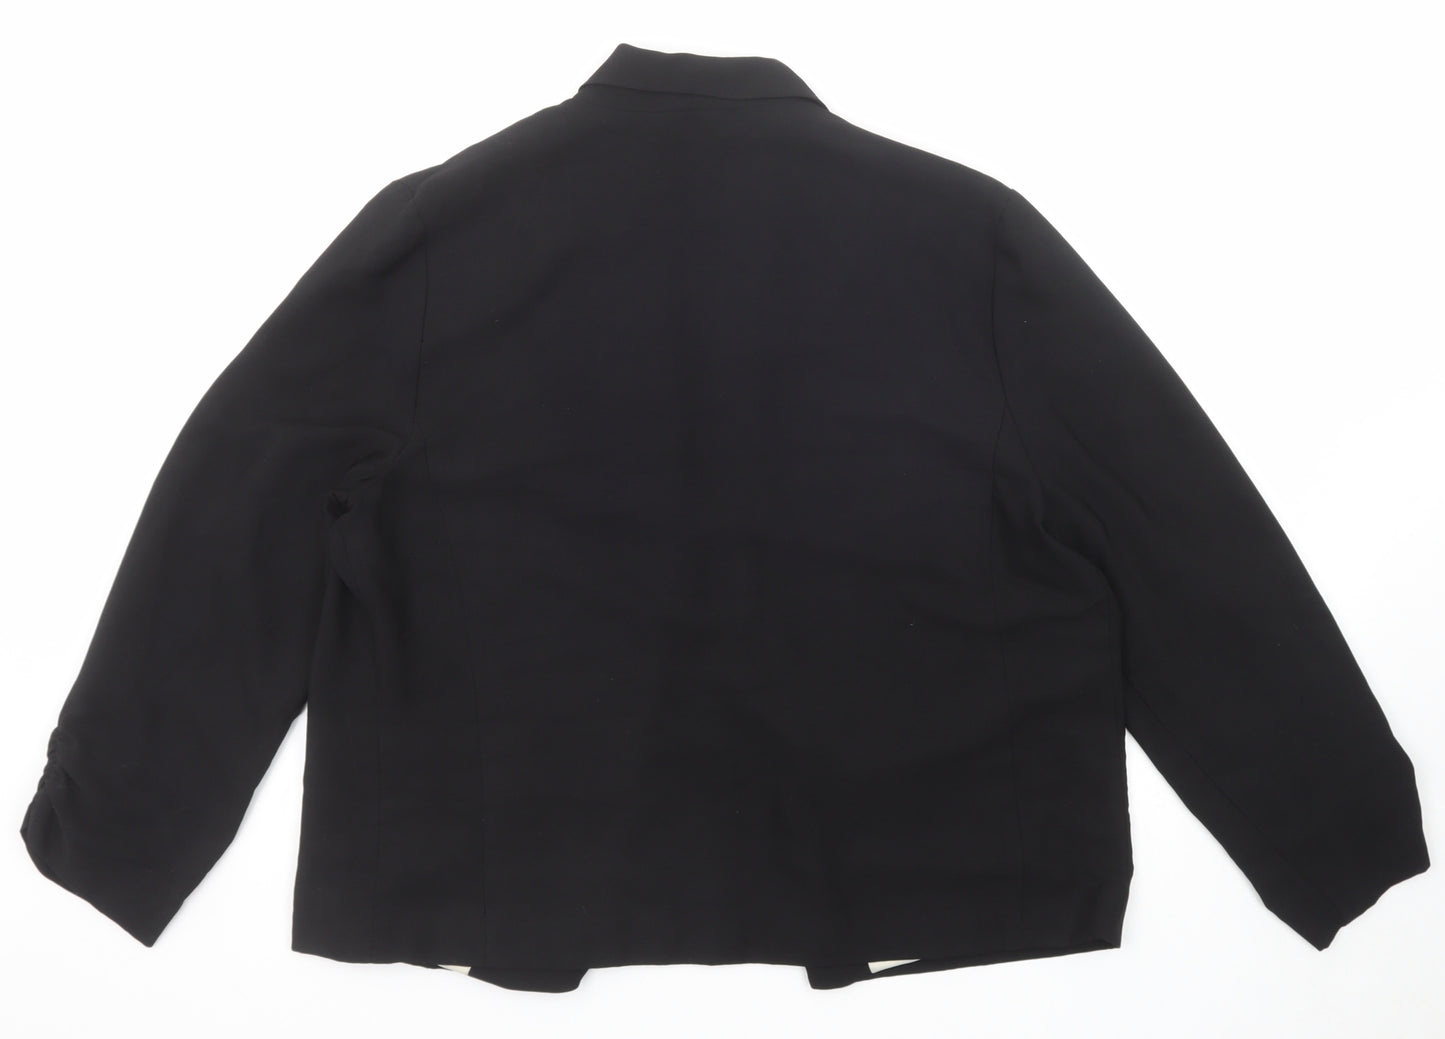 New Look Womens Black Jacket Blazer Size 16